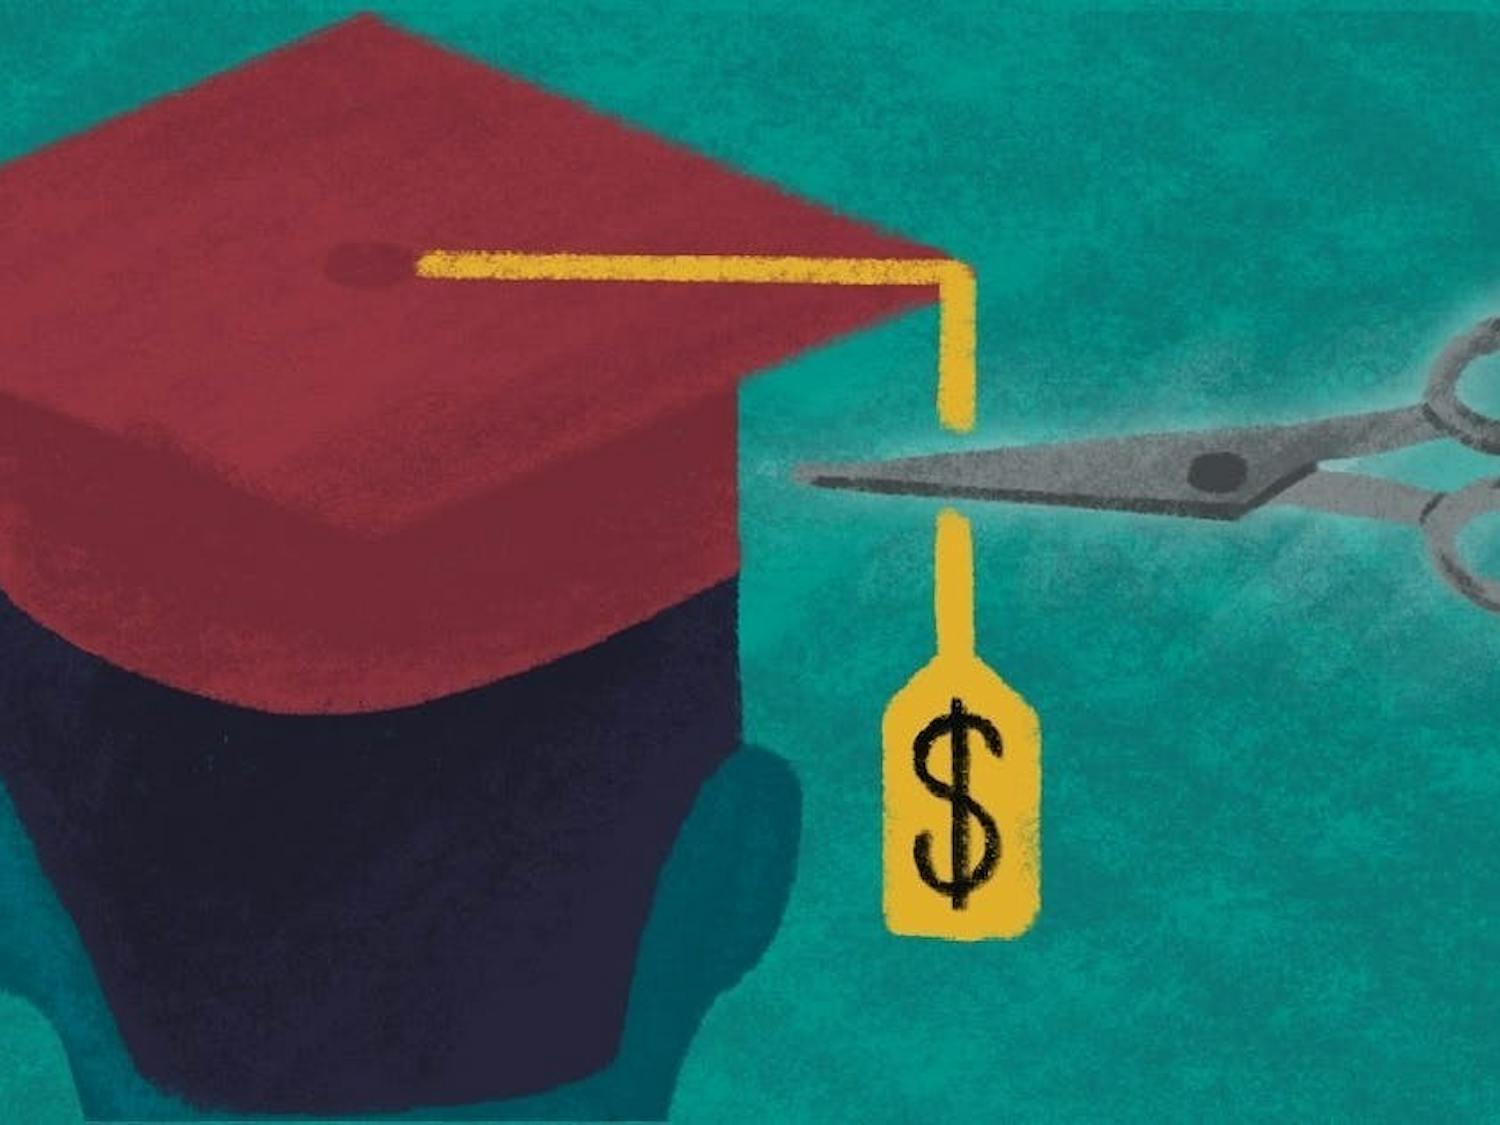 Ilustración de un gorro de graduación con una etiqueta de precio cortada con tijeras.